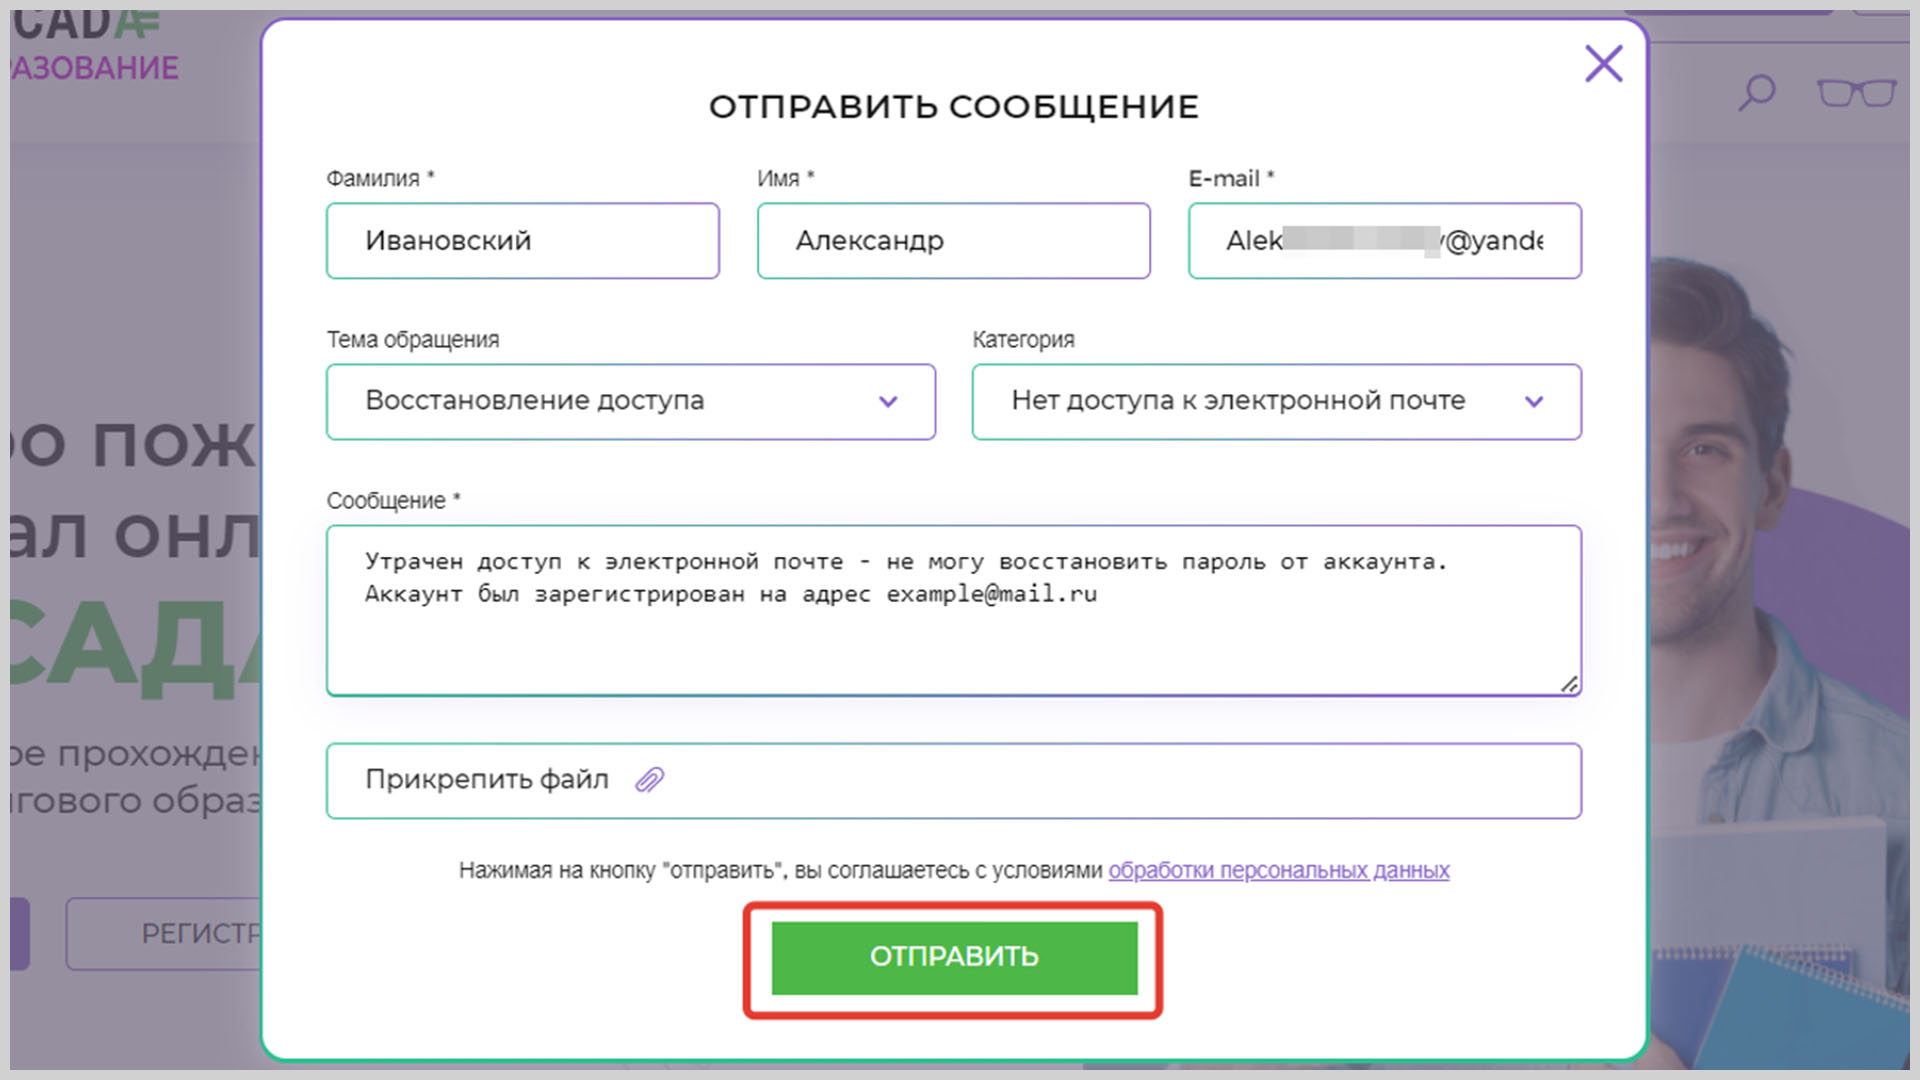 Скриншот формы обращения в службу поддержки для восстановления доступа к аккаунту.